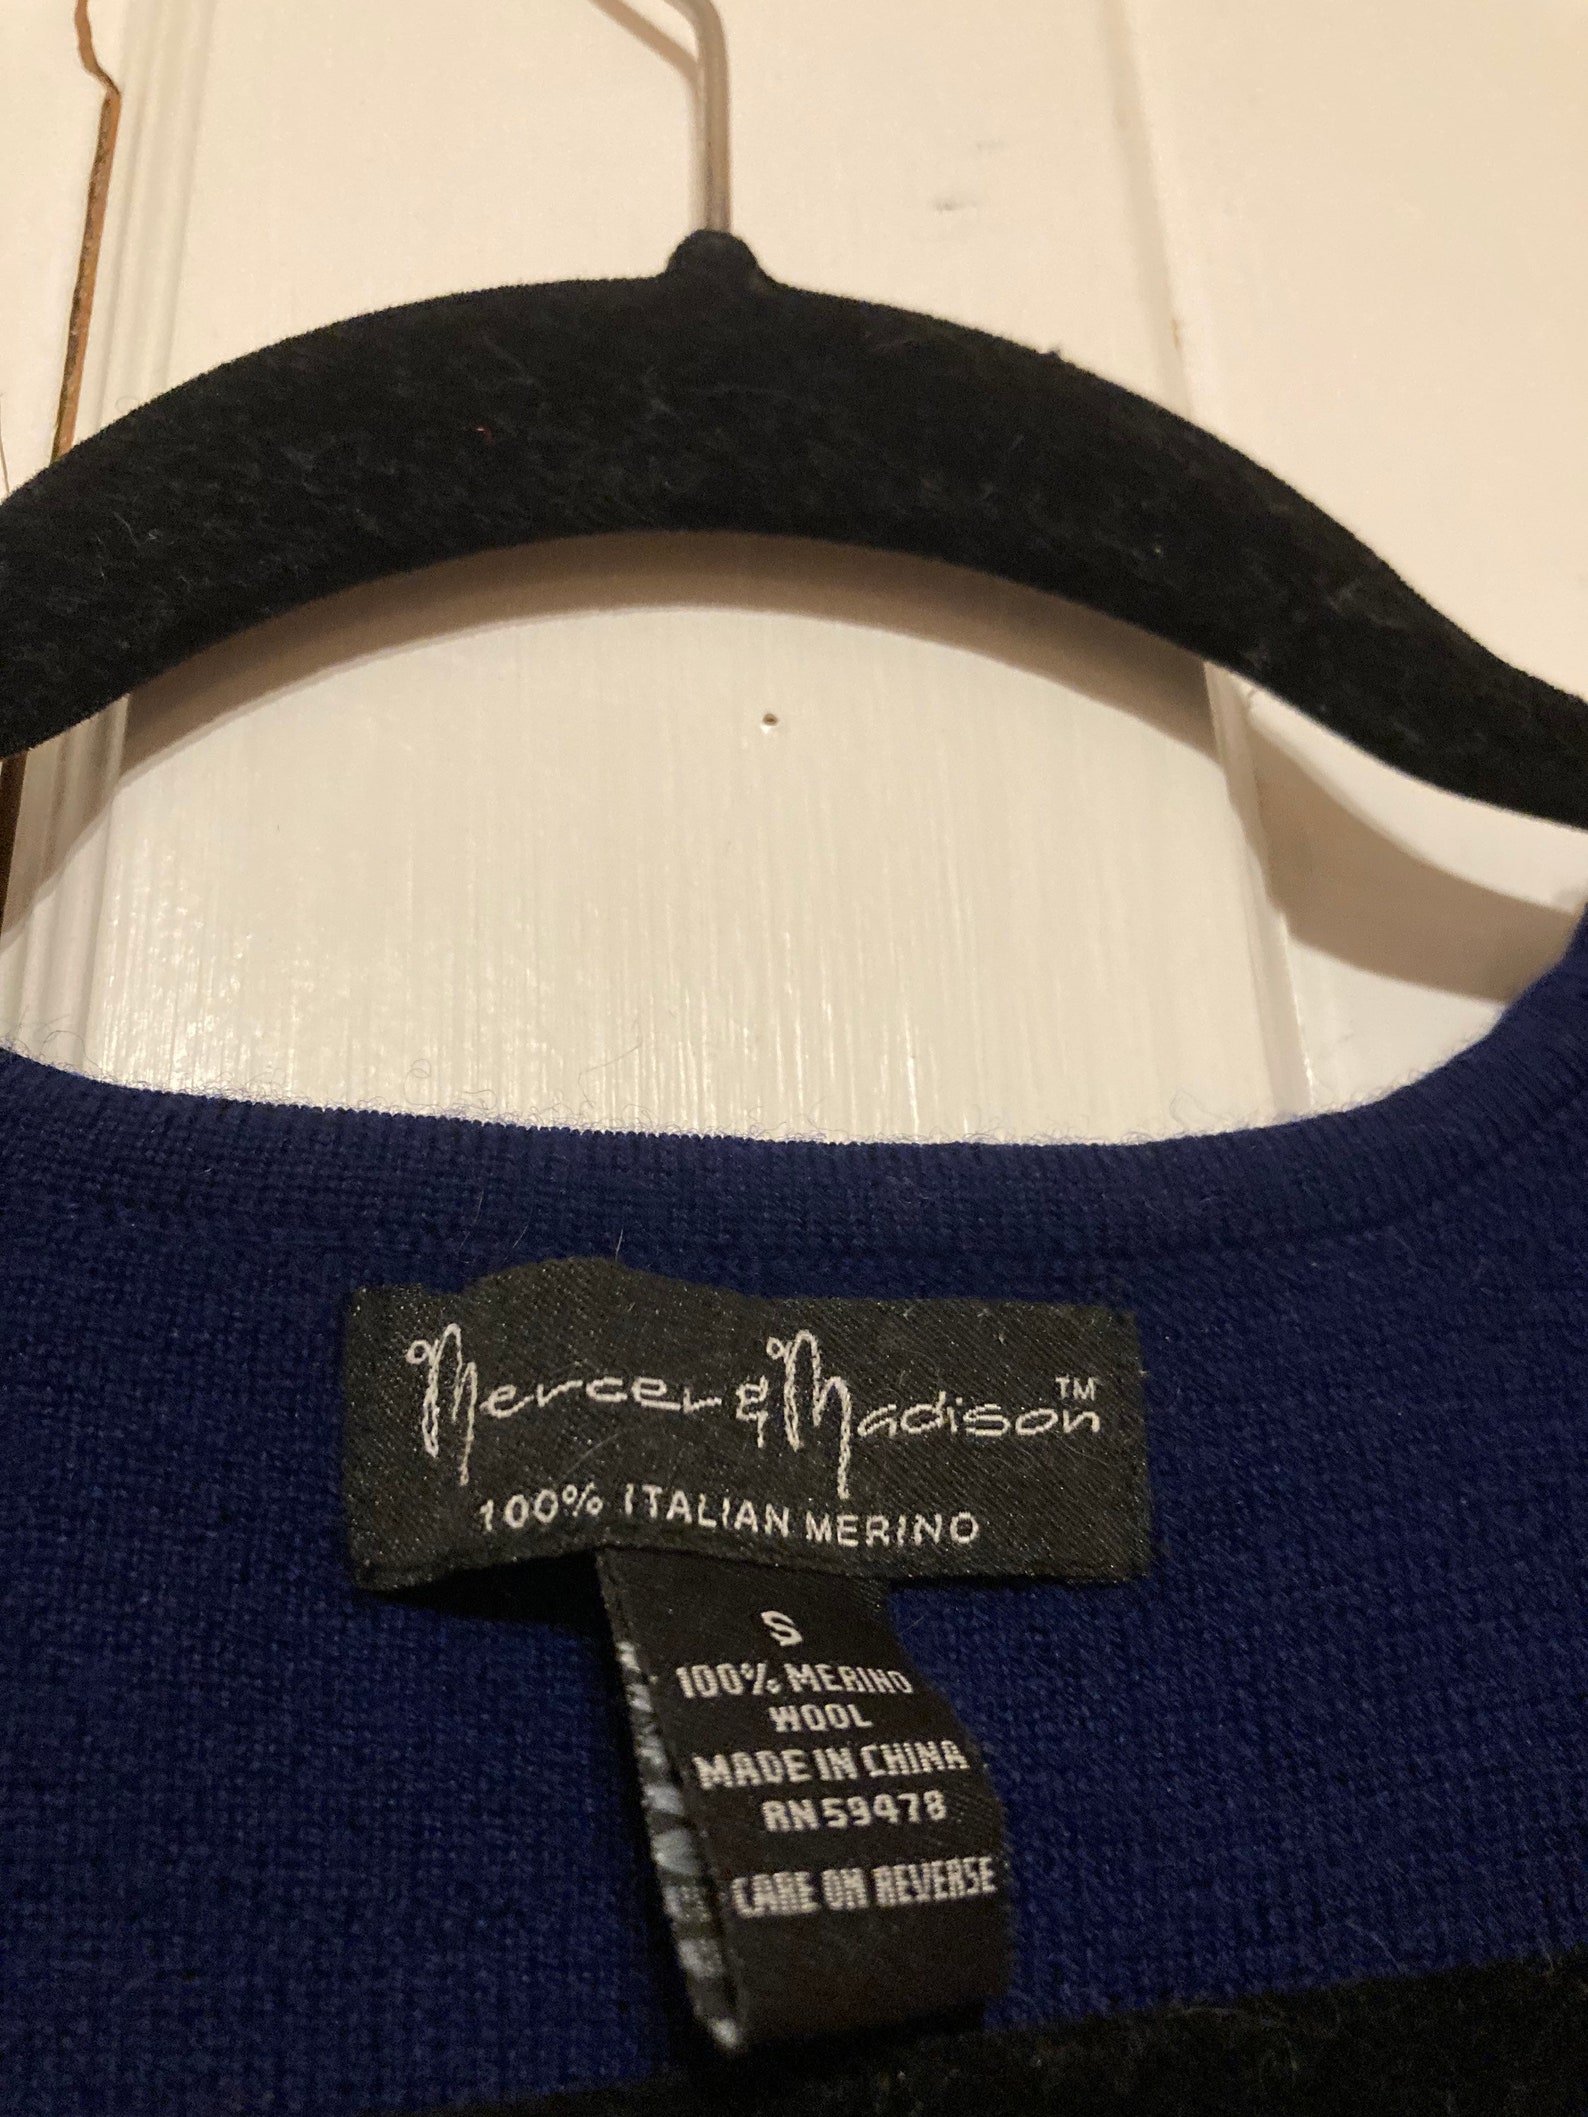 Mercer & Madison Italian Merino Wool Sweater | Etsy